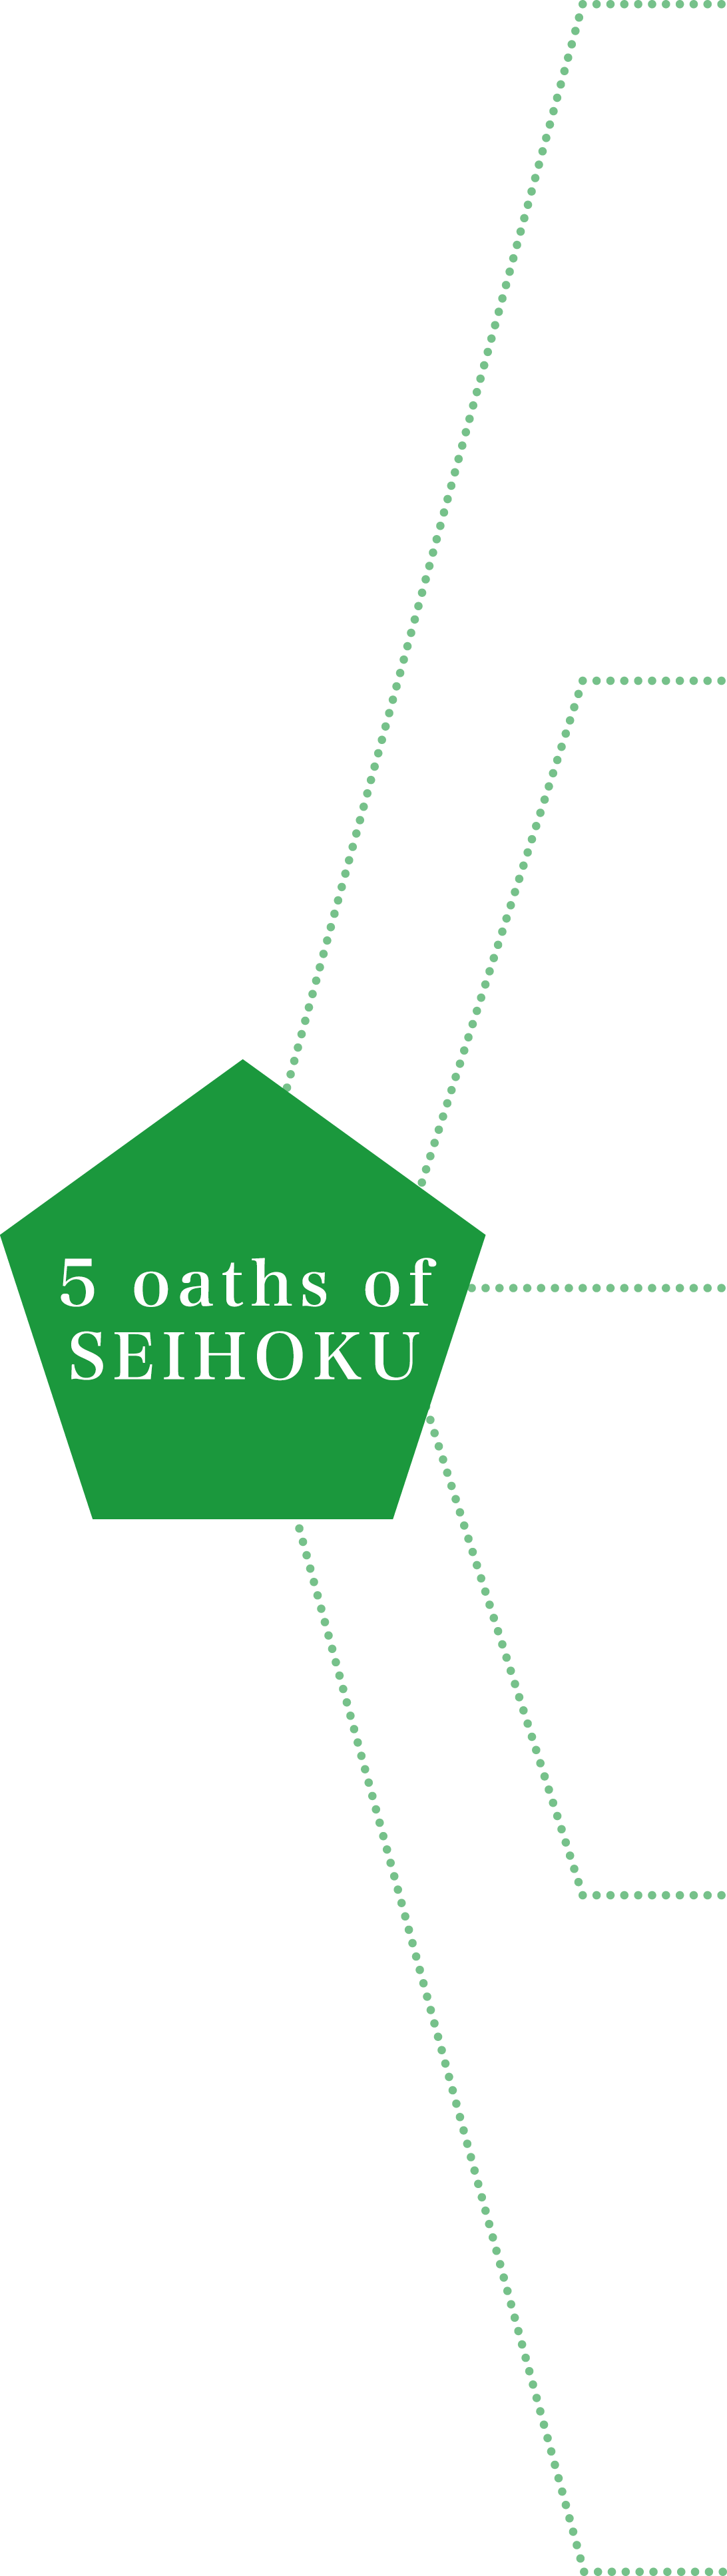 5 oaths of SEIHOKU 